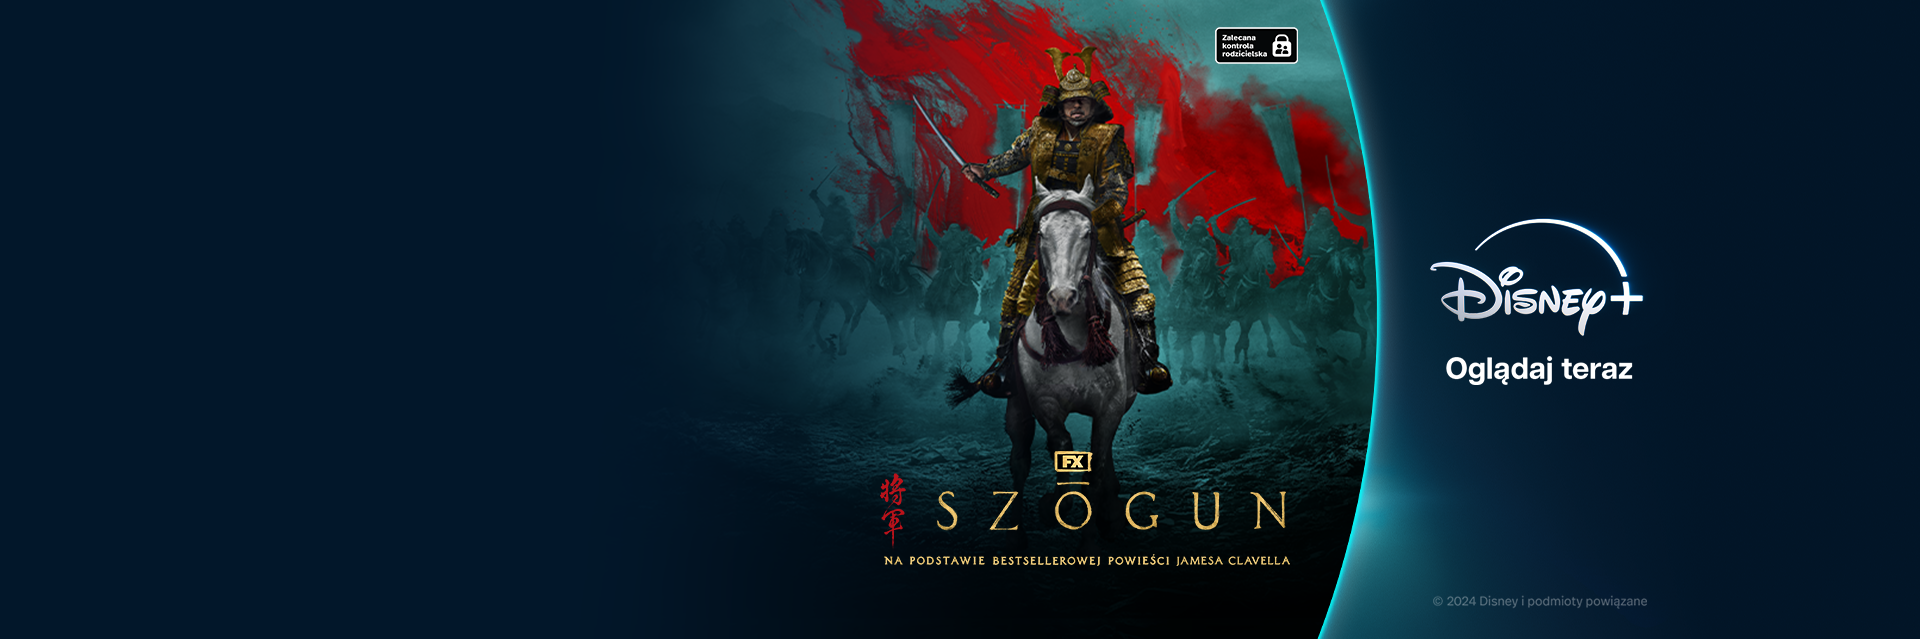 grafika promocyjna do serialu Szogun